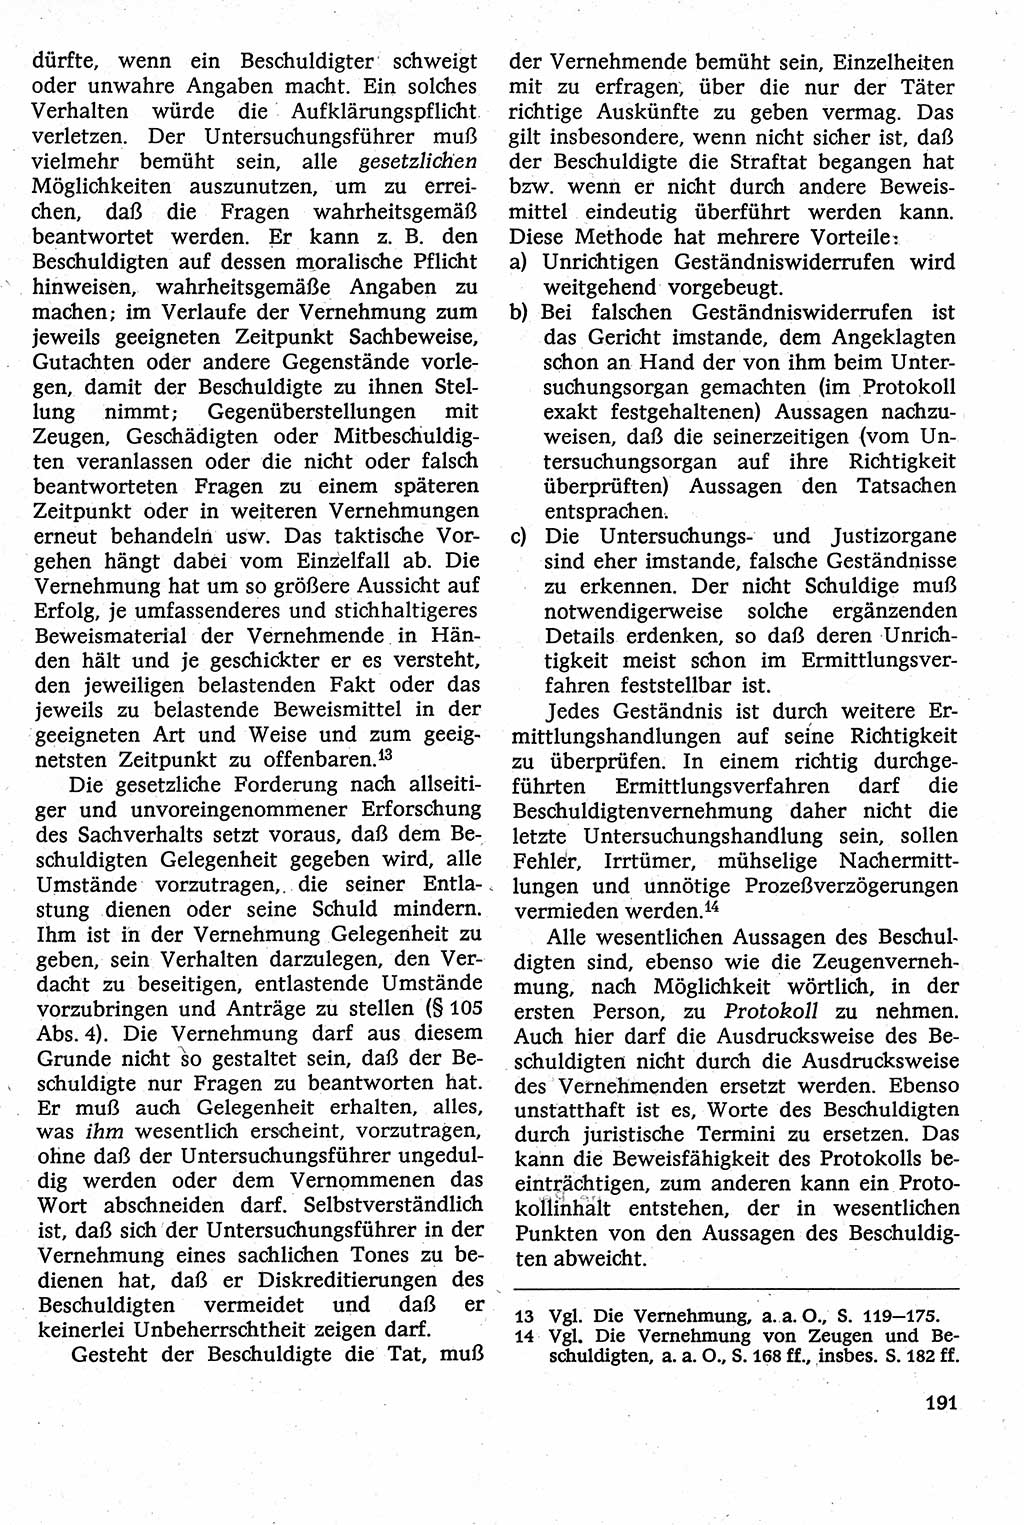 Strafverfahrensrecht [Deutsche Demokratische Republik (DDR)], Lehrbuch 1982, Seite 191 (Strafverf.-R. DDR Lb. 1982, S. 191)